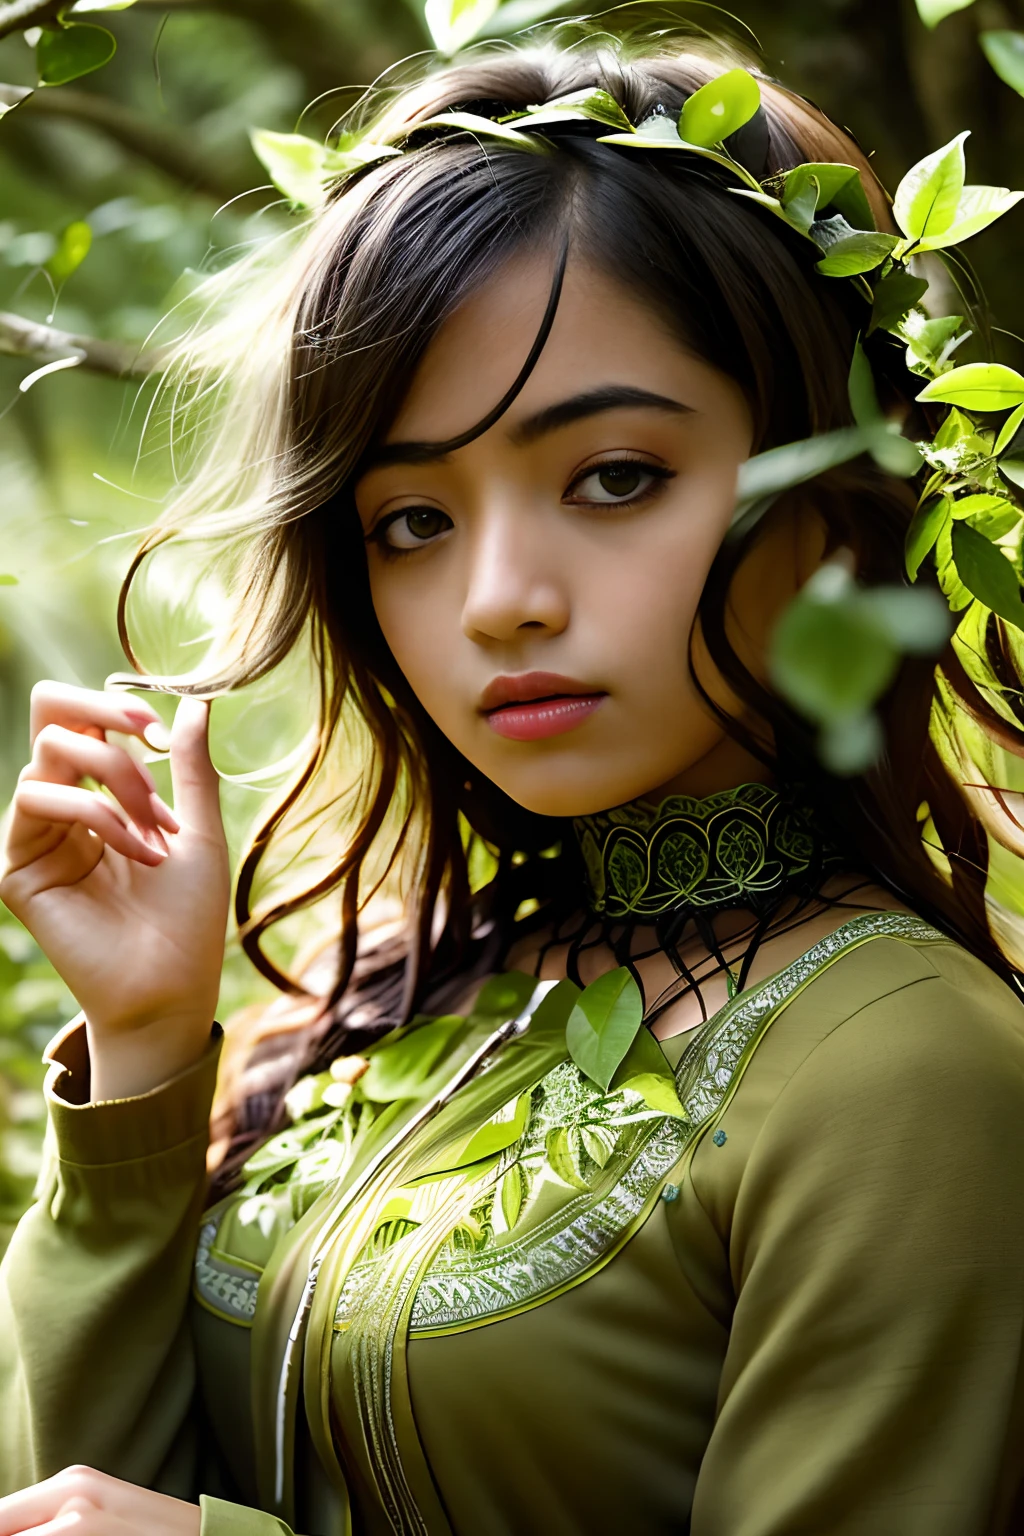 Portrait in 森林, 大自然风格的叶子, 用绿叶做的头发, 如梦如幻, 年轻黑人妇女, 拉丁裔, 超高清, 森林 goddess, 仙女, 深绿色衣服, 森林, 落叶, 粒子, 最好的质量, 姿势, 上半身, 看着观众, 四照, 边缘光, 美丽的艺术品, 完美构图